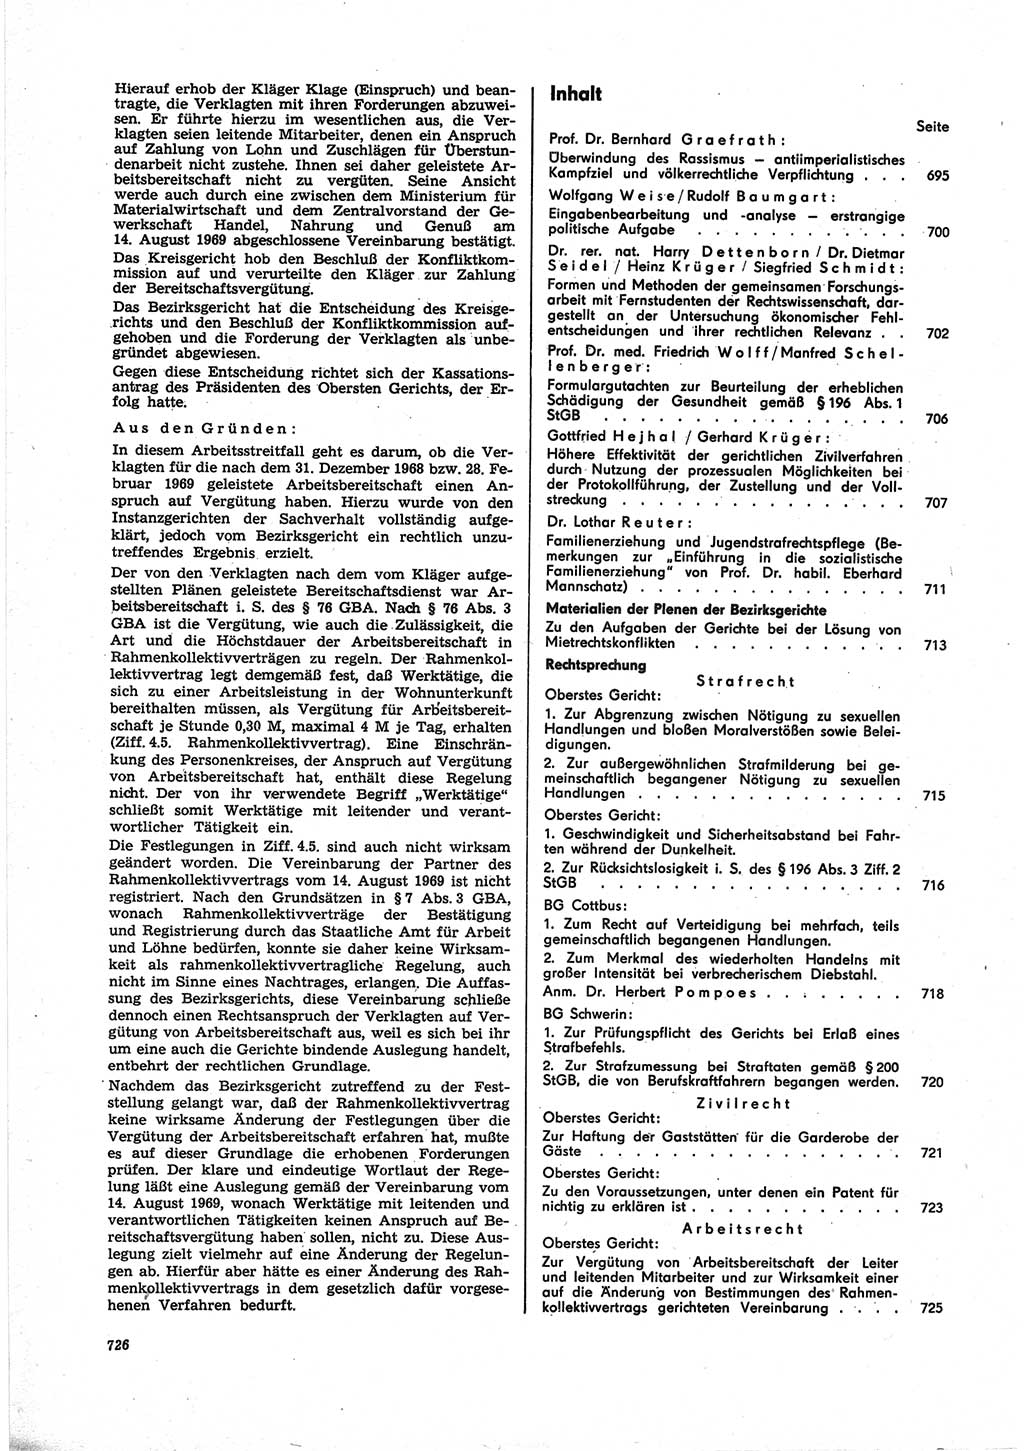 Neue Justiz (NJ), Zeitschrift für Recht und Rechtswissenschaft [Deutsche Demokratische Republik (DDR)], 25. Jahrgang 1971, Seite 726 (NJ DDR 1971, S. 726)